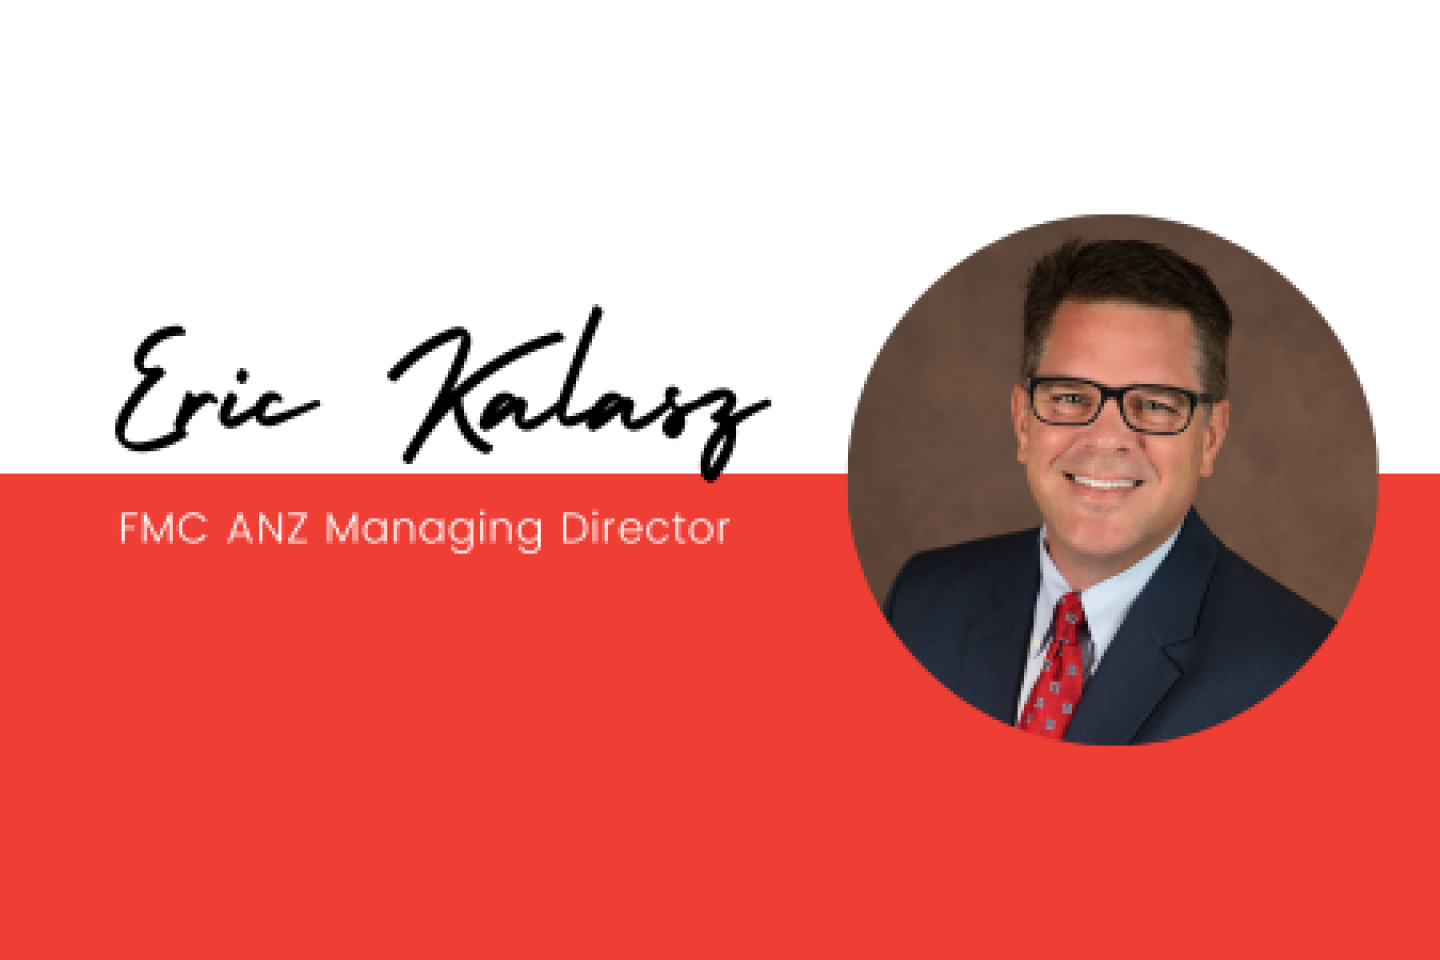 Eric Kalasz FMC ANZ Managing Director